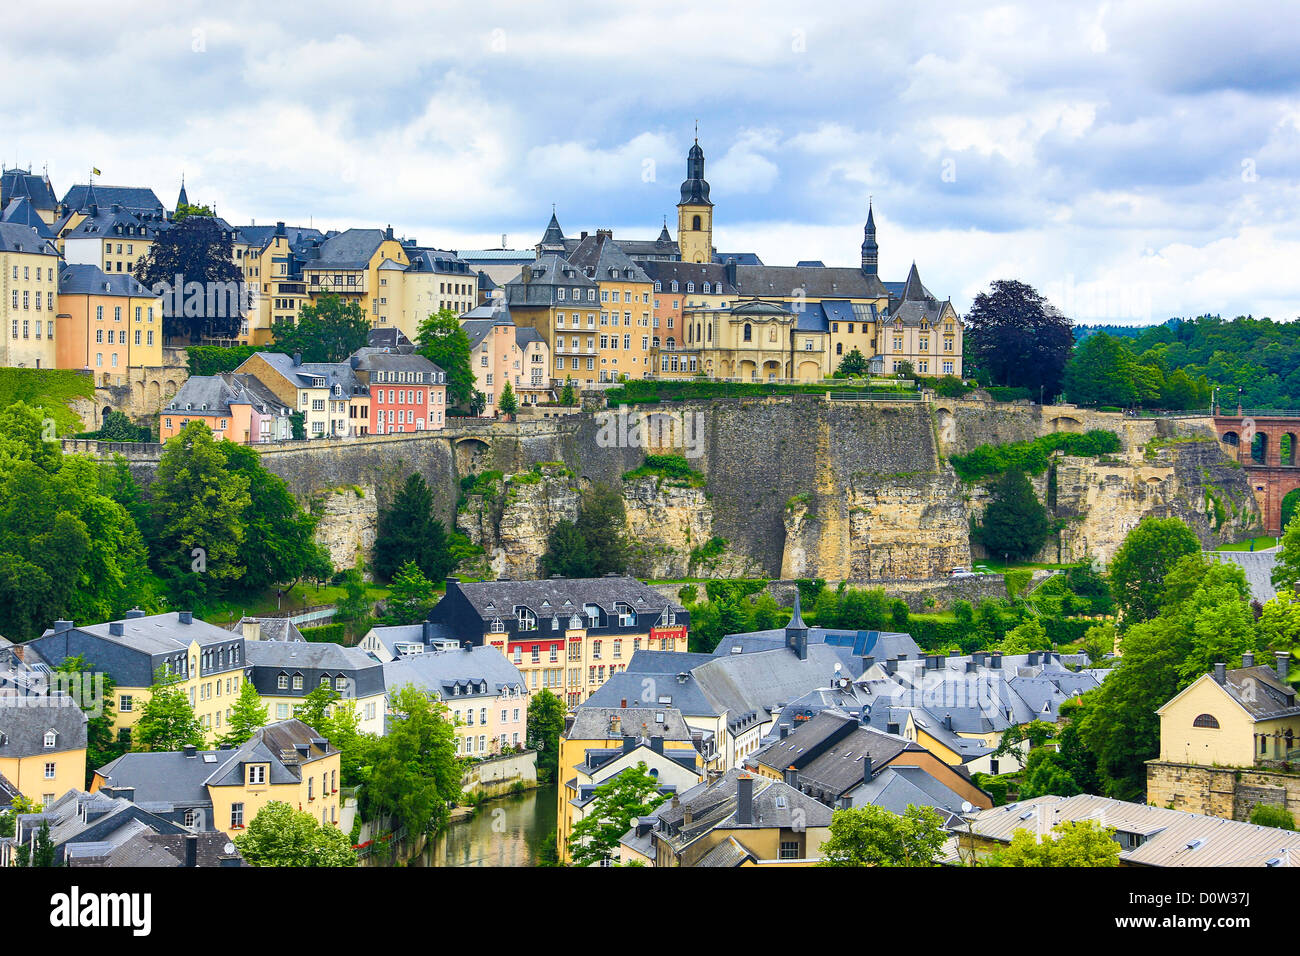 Luxemburg, Europa, viaggi, città patrimonio mondiale, architettura, centro citta', centro storico, skyline, Unesco Foto Stock